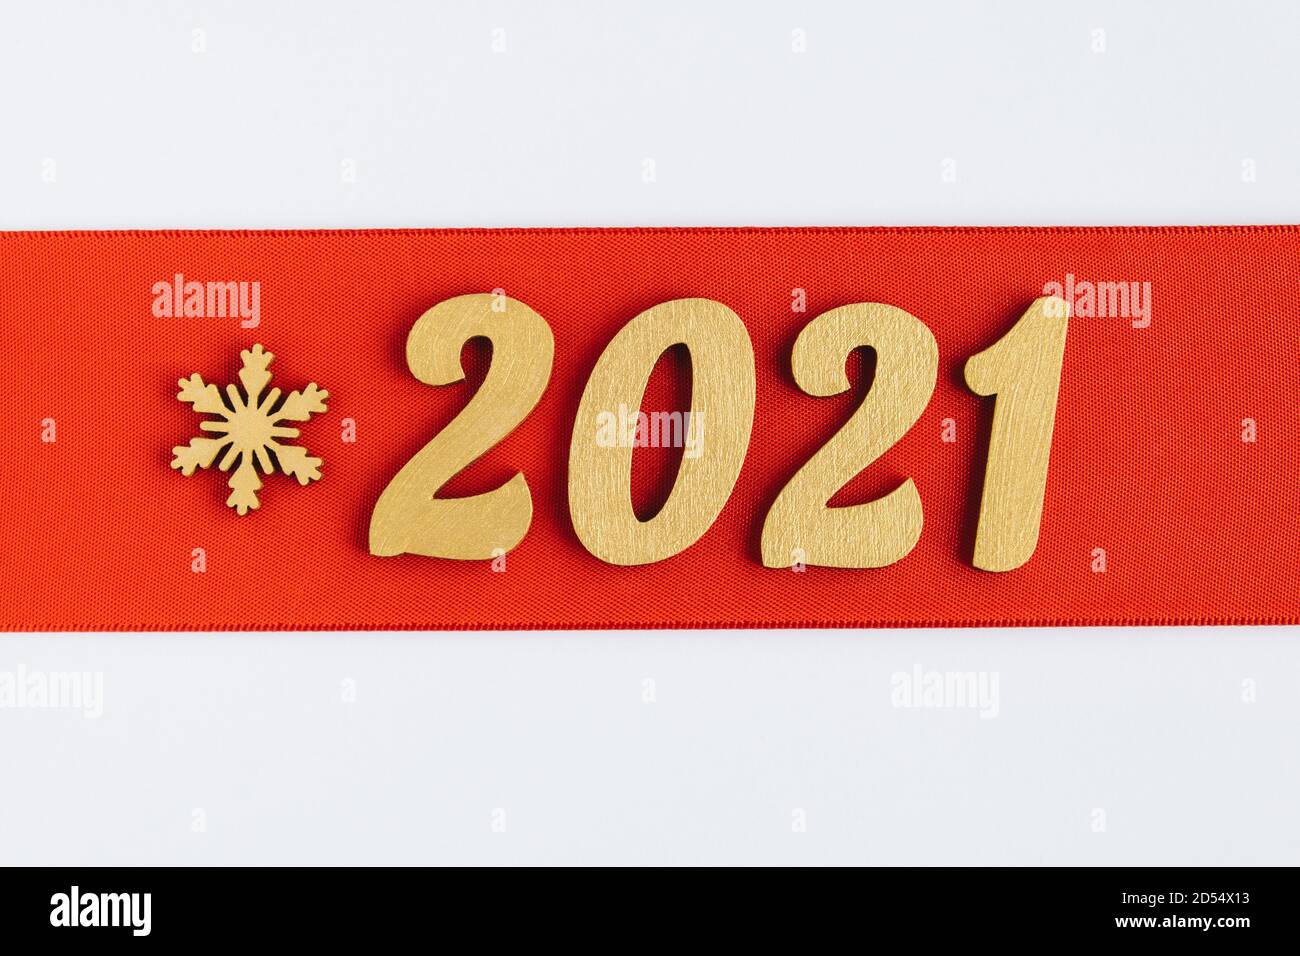 Fond festif. Ruban rouge avec affiche dorée du nouvel an 2021 et flocon de neige. Bannière de fête des fêtes d'hiver. Joyeux Noël et Bonne Année. Banque D'Images